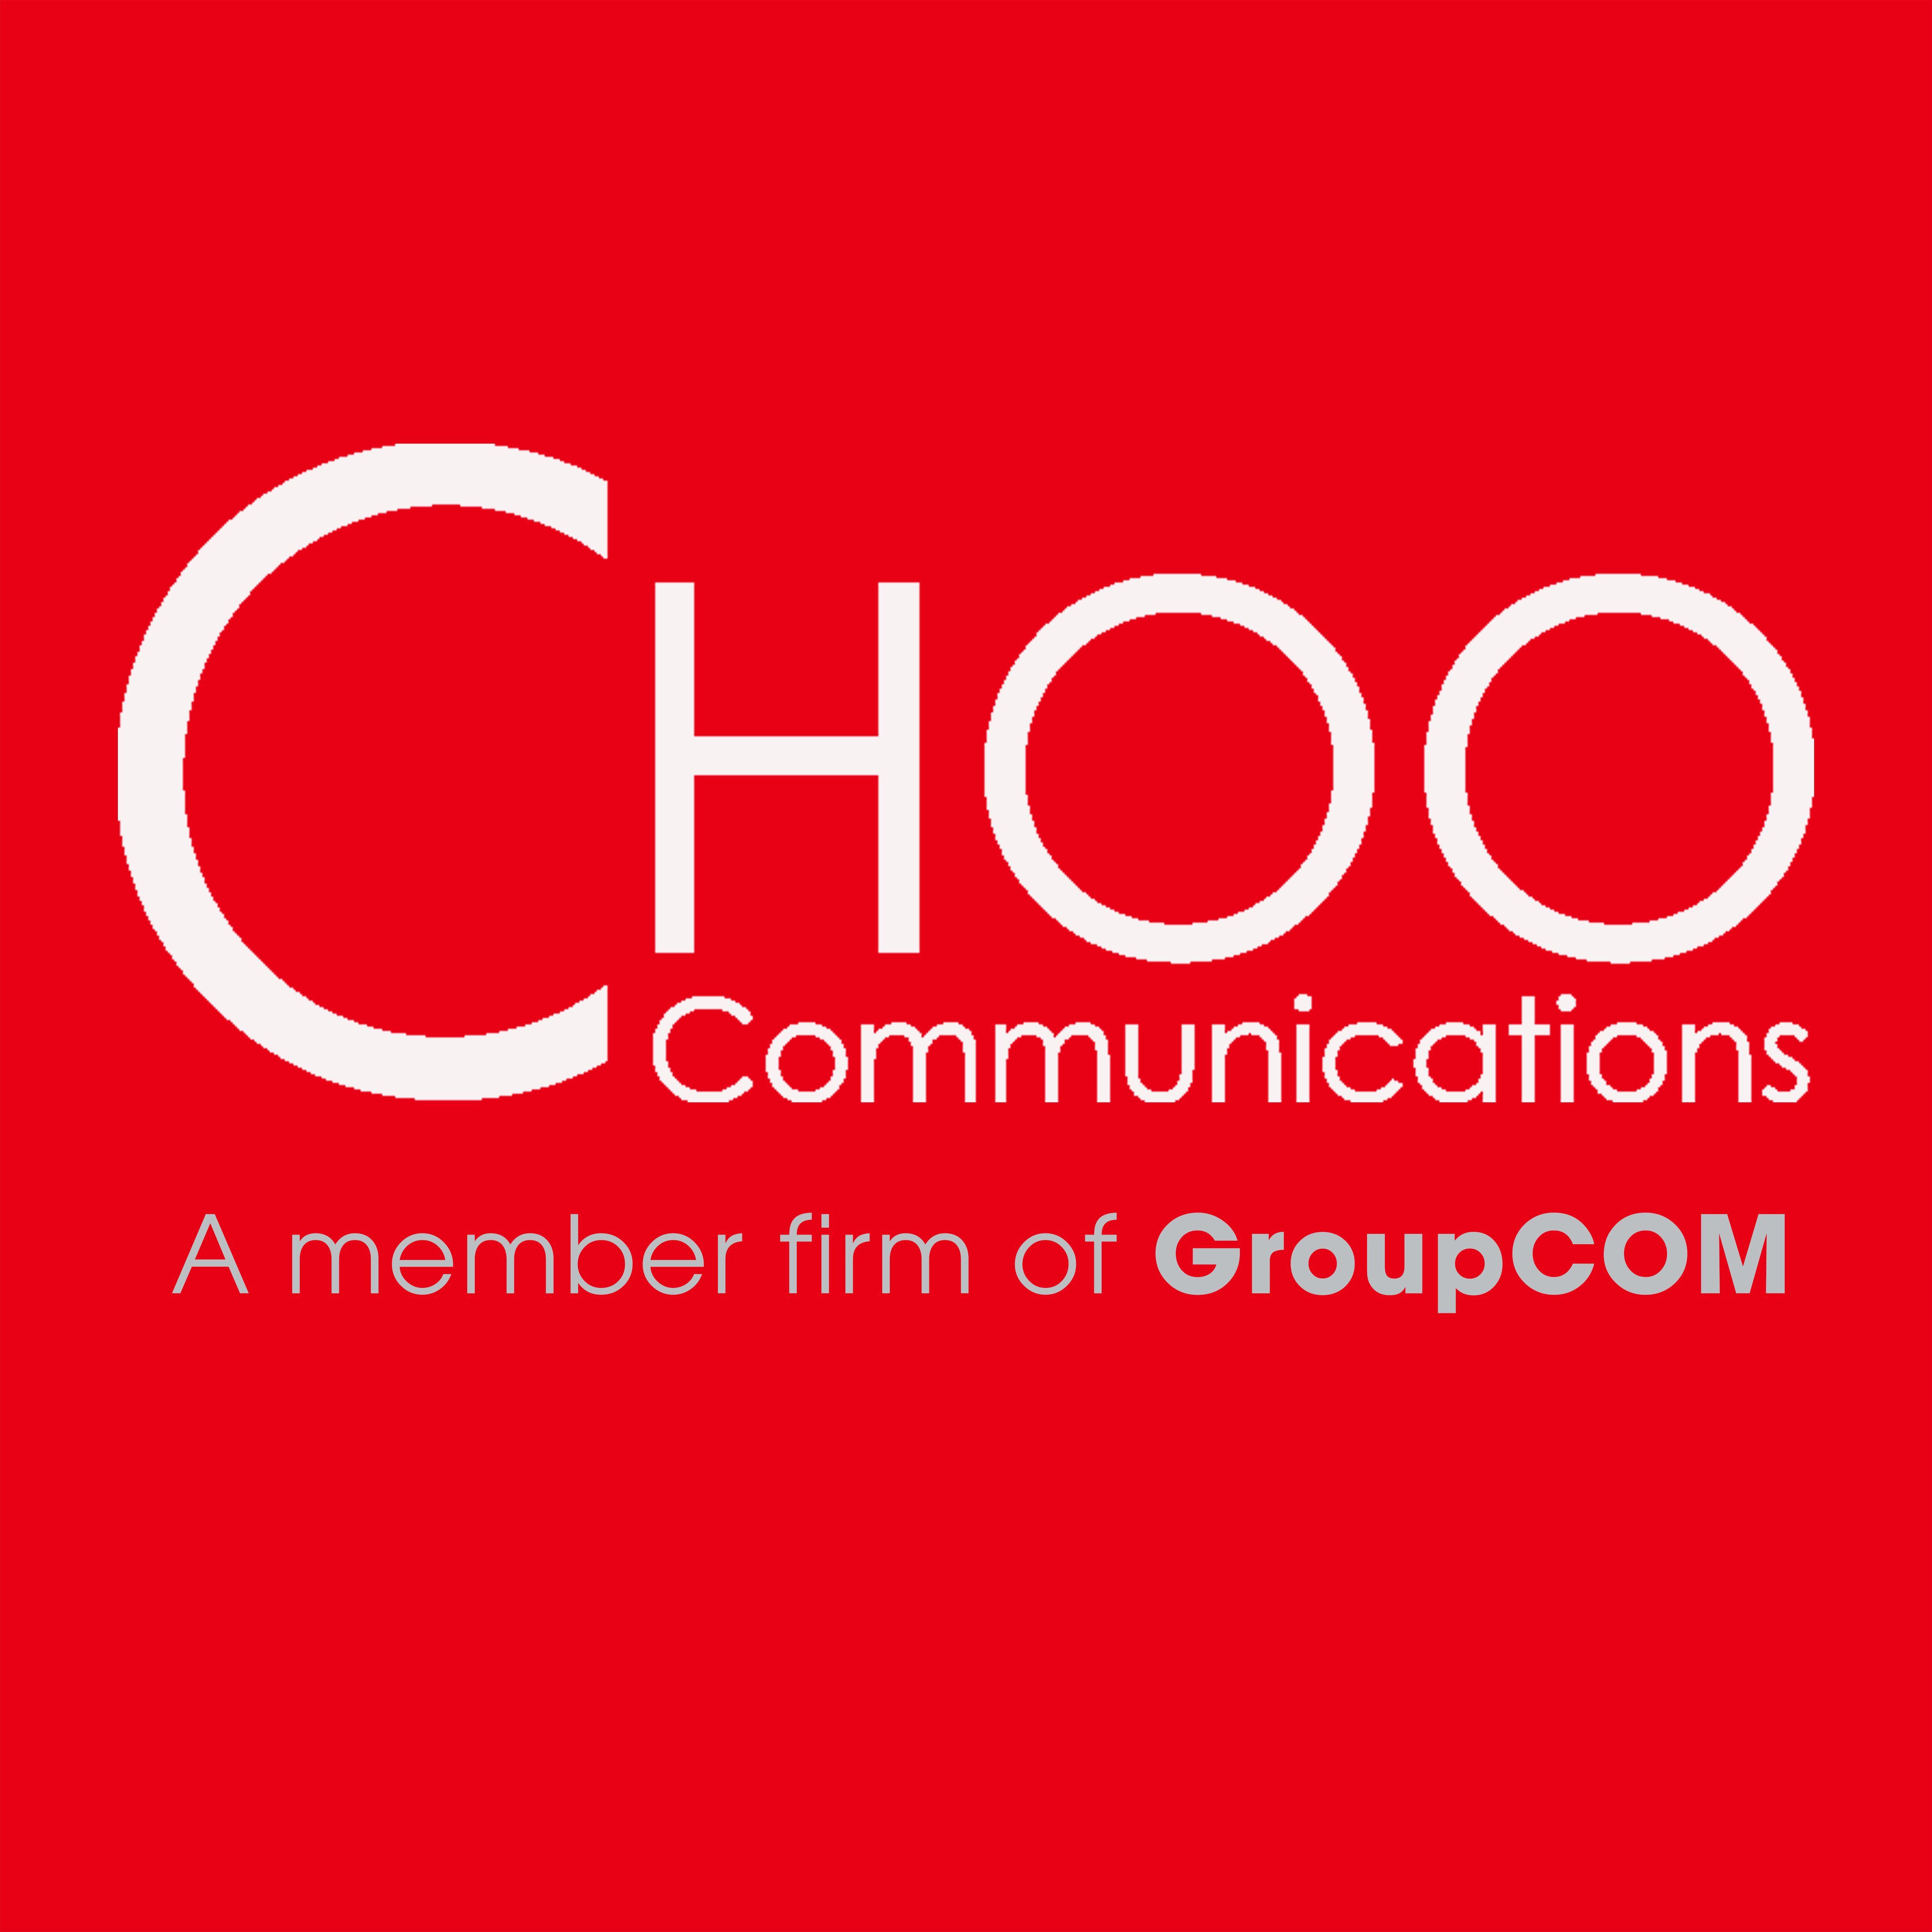 CHOO Communications